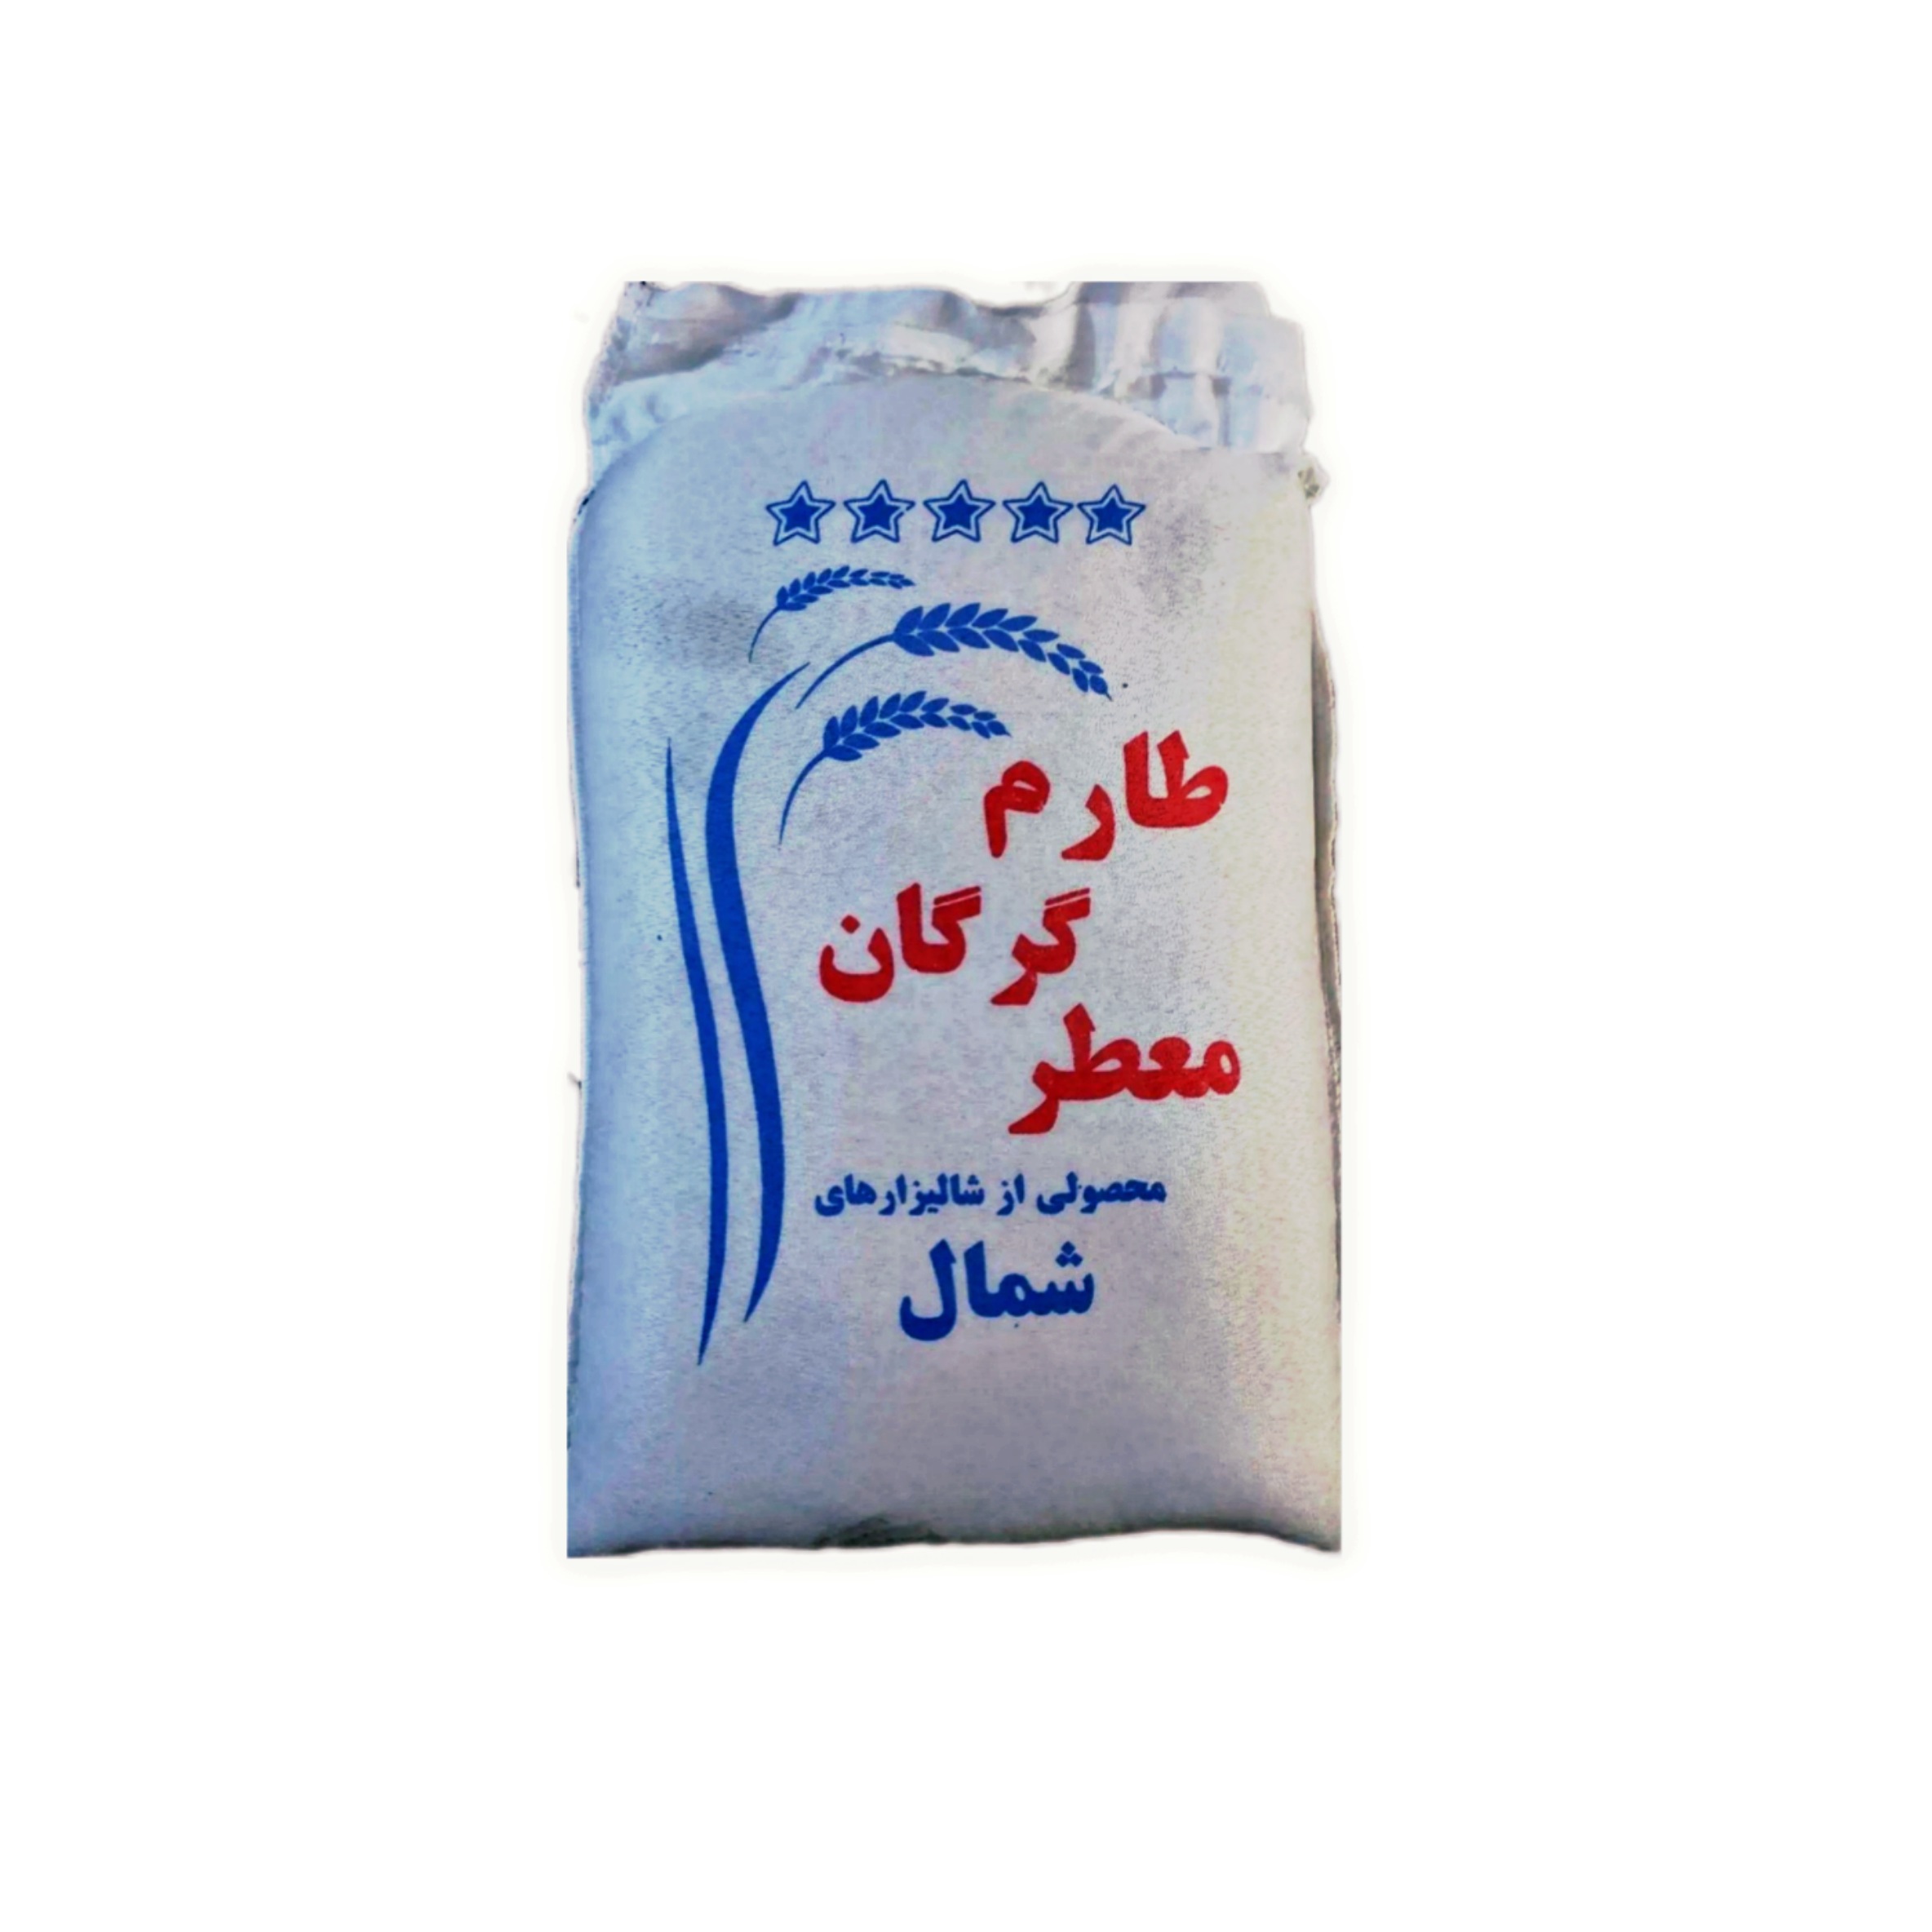 نکته خرید - قیمت روز برنج ایرانی طارم معطر گرگان - 10 کیلوگرم خرید